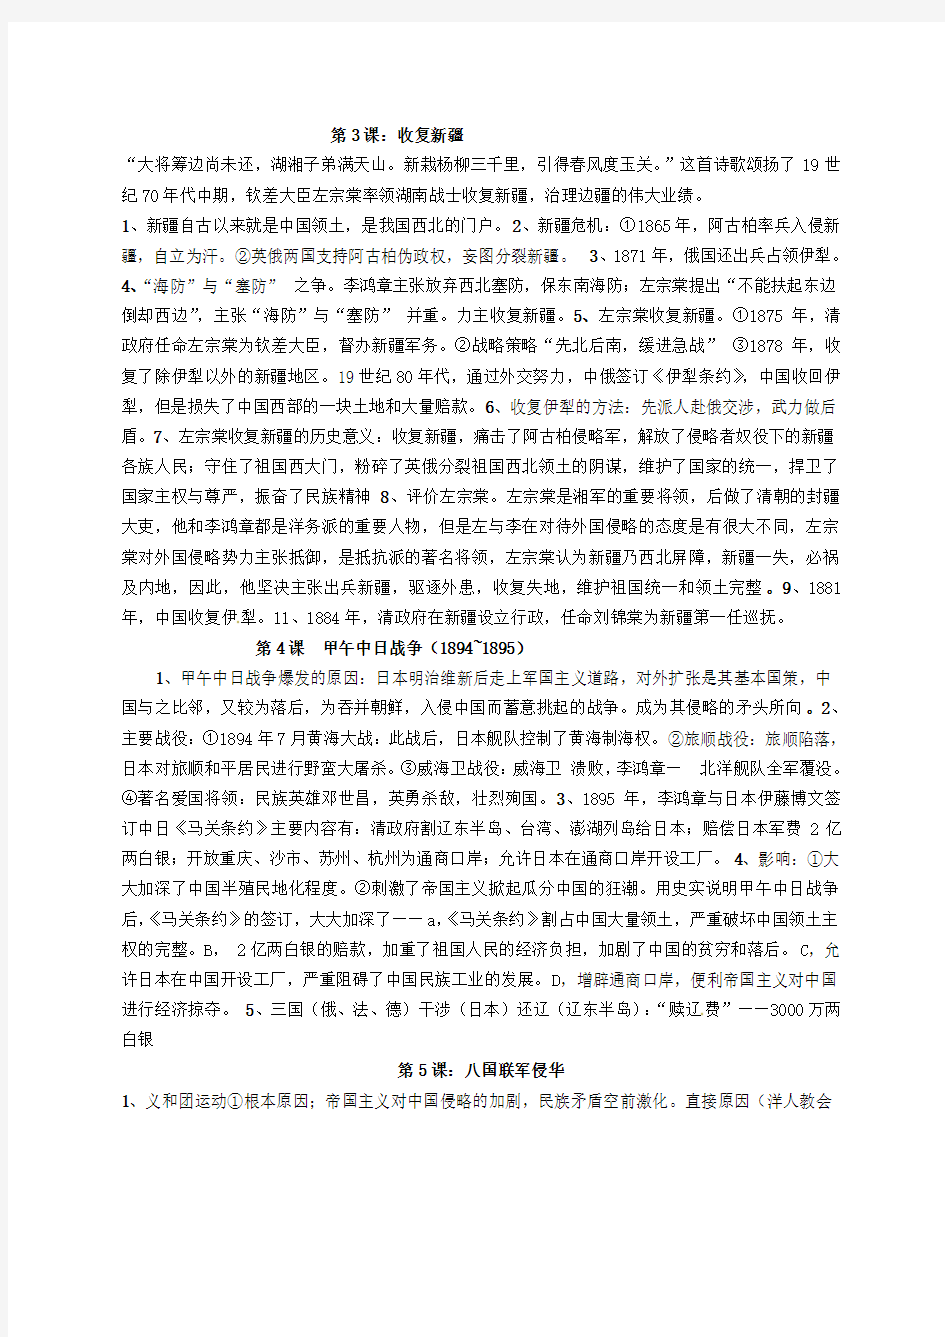 2019-2020年八年级历史上学期中国近代史(上)复习资料